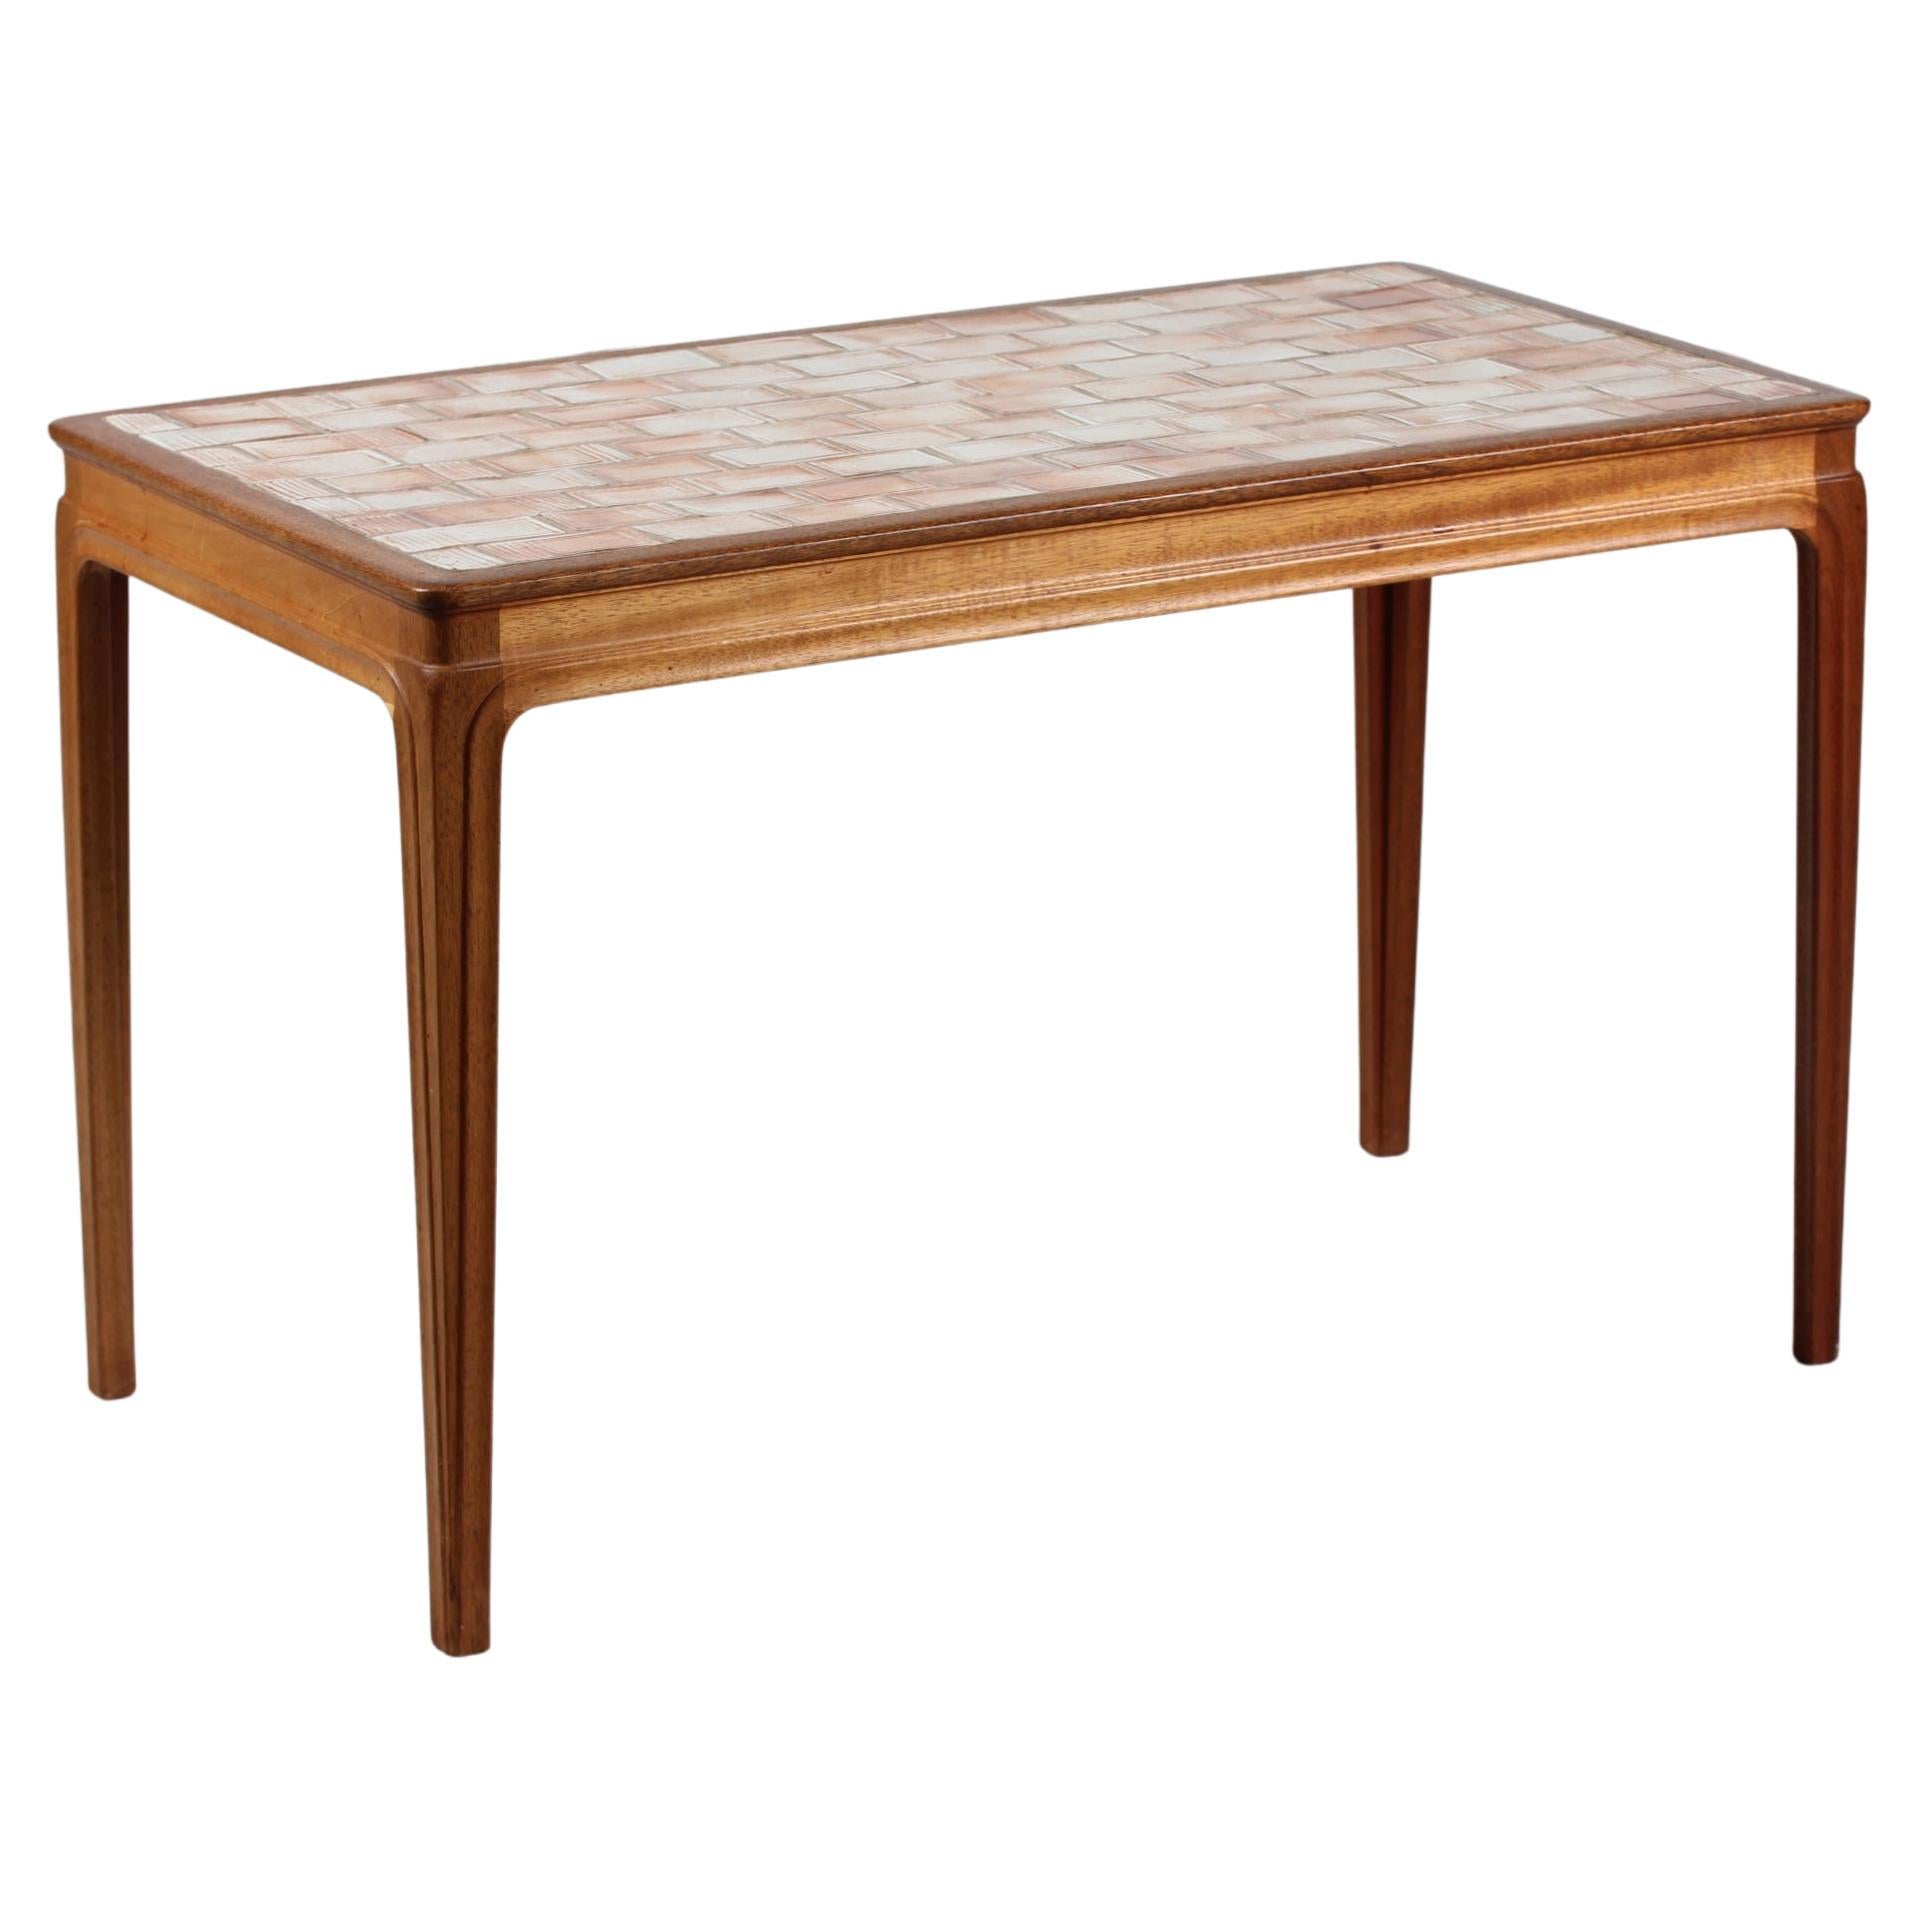 1950s Danish Modern Mahogany Tile-Top Table by Chr. Rasmussen, Randers, Denmark For Sale